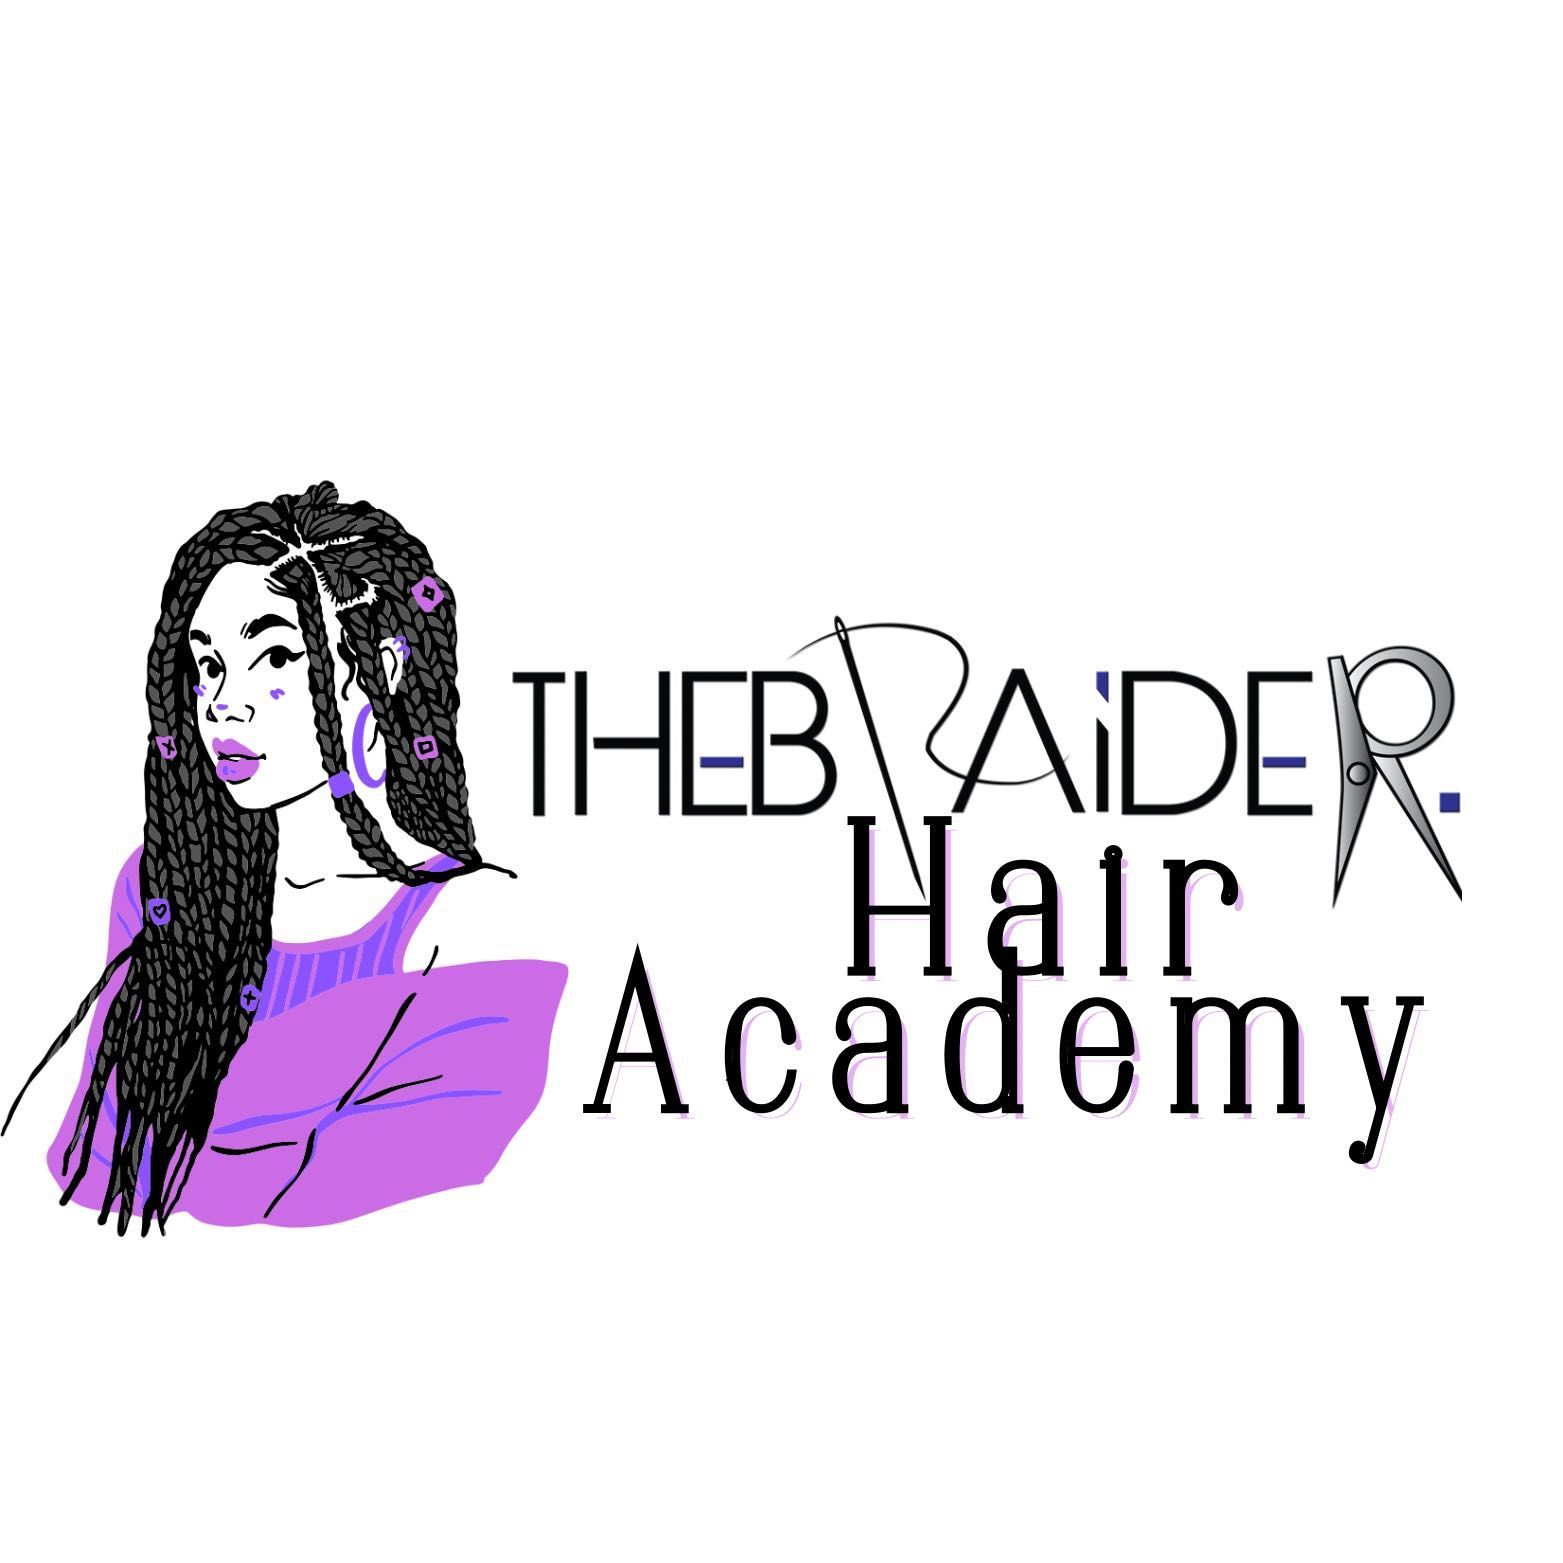 Thebraider Hair Academy, 1314 S Main St, 300, Duncanville, 75137